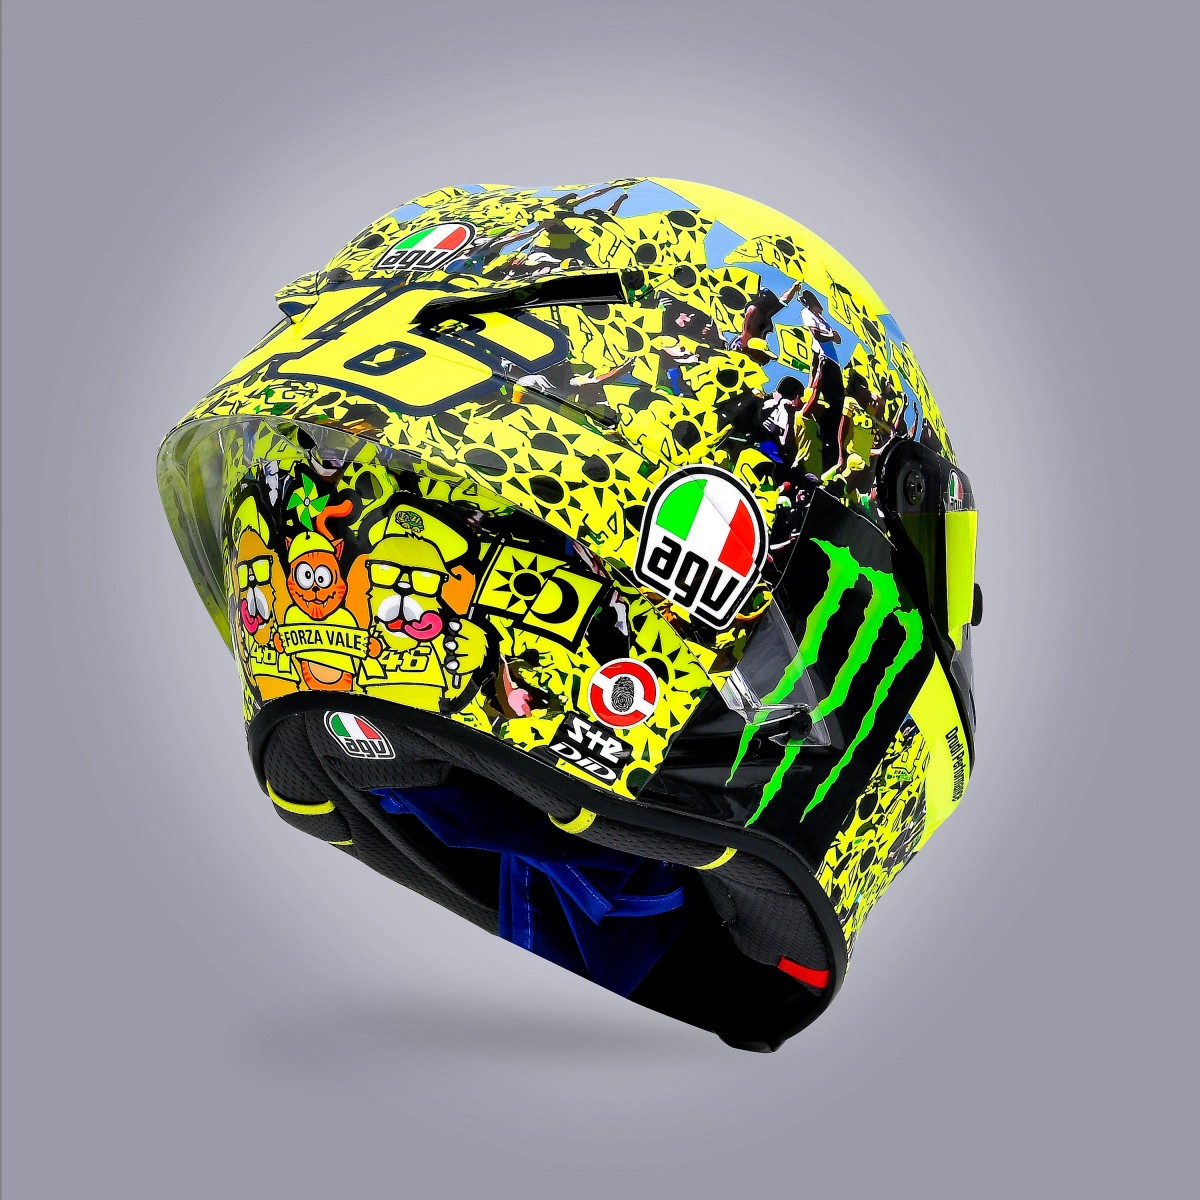 Последний особый шлем Валентино Росси для EmiliaRomagnaGP MotoGP - Popolo Giallo